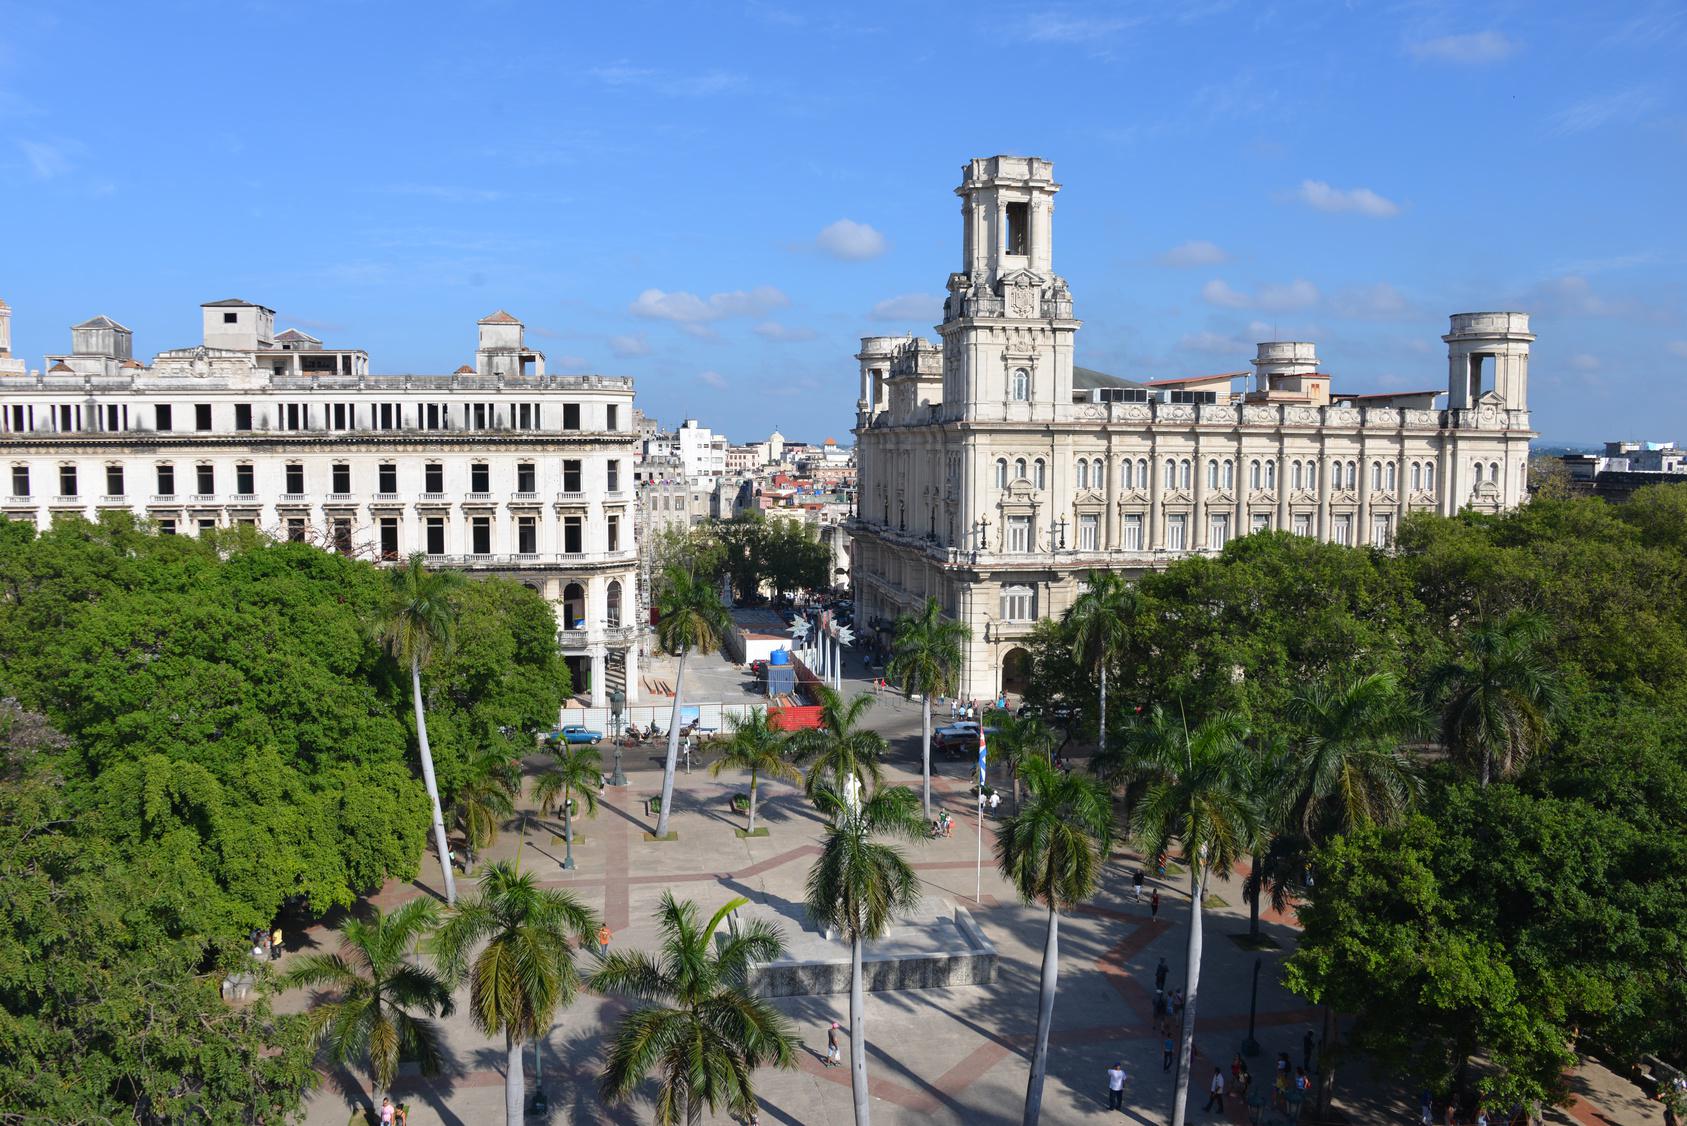 La Habana . L’Avana è la più grande città dei Caraibi e racchiude in sé un caleidoscopio di stili architettonici che hanno portato l’Unesco a dichiarare L’Avana vecchia patrimonio dell’umanità.